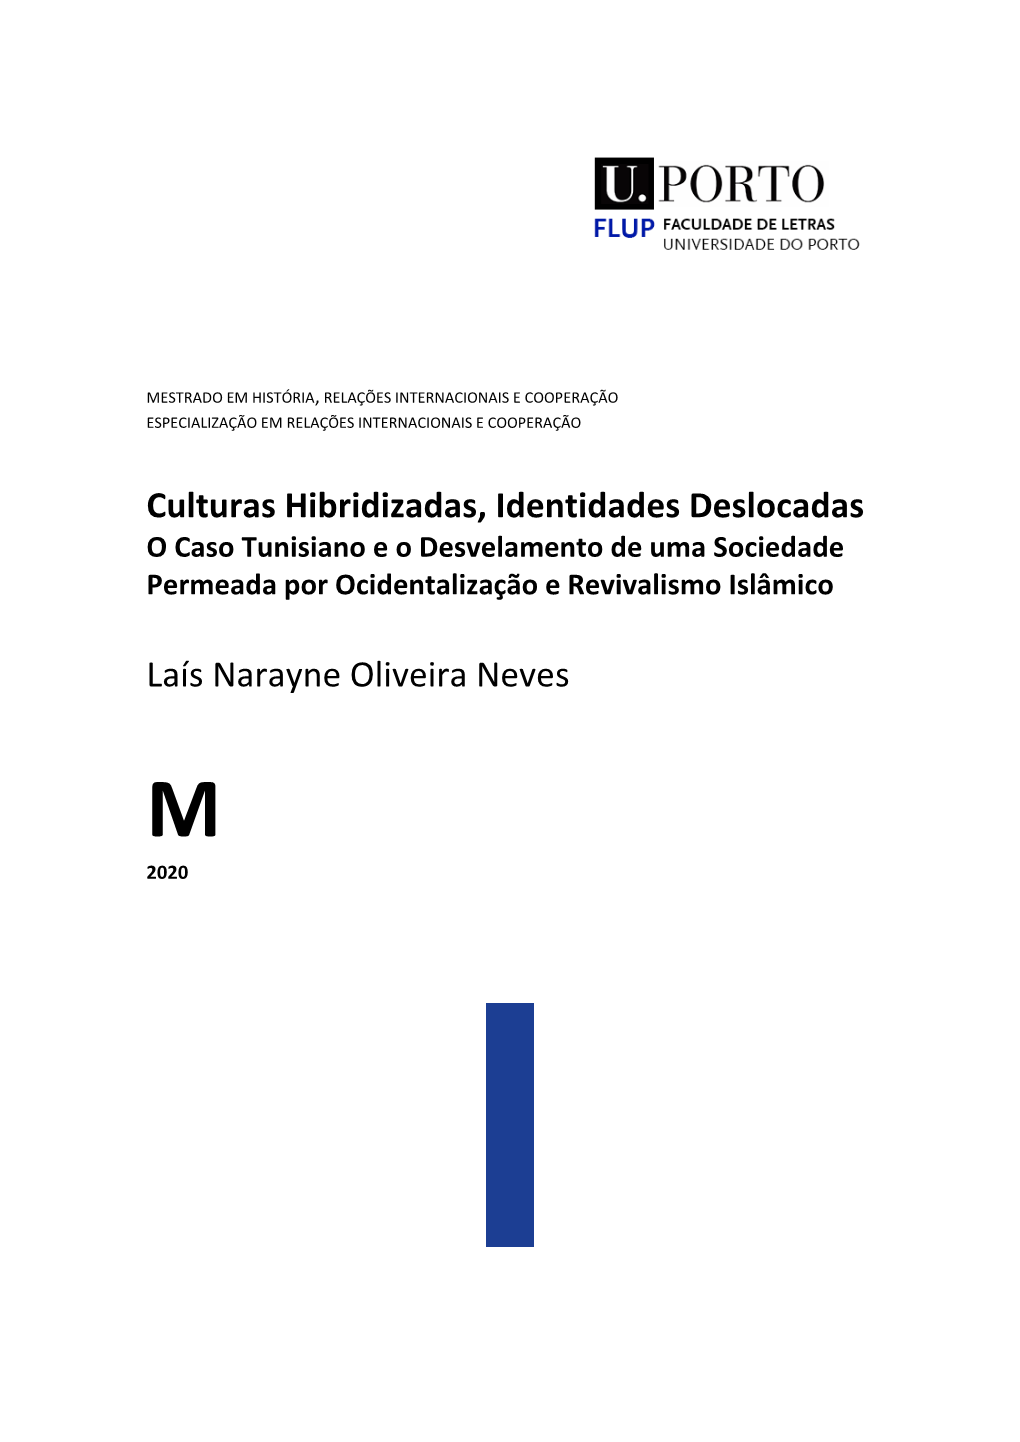 Culturas Hibridizadas, Identidades Deslocadas Laís Narayne Oliveira Neves